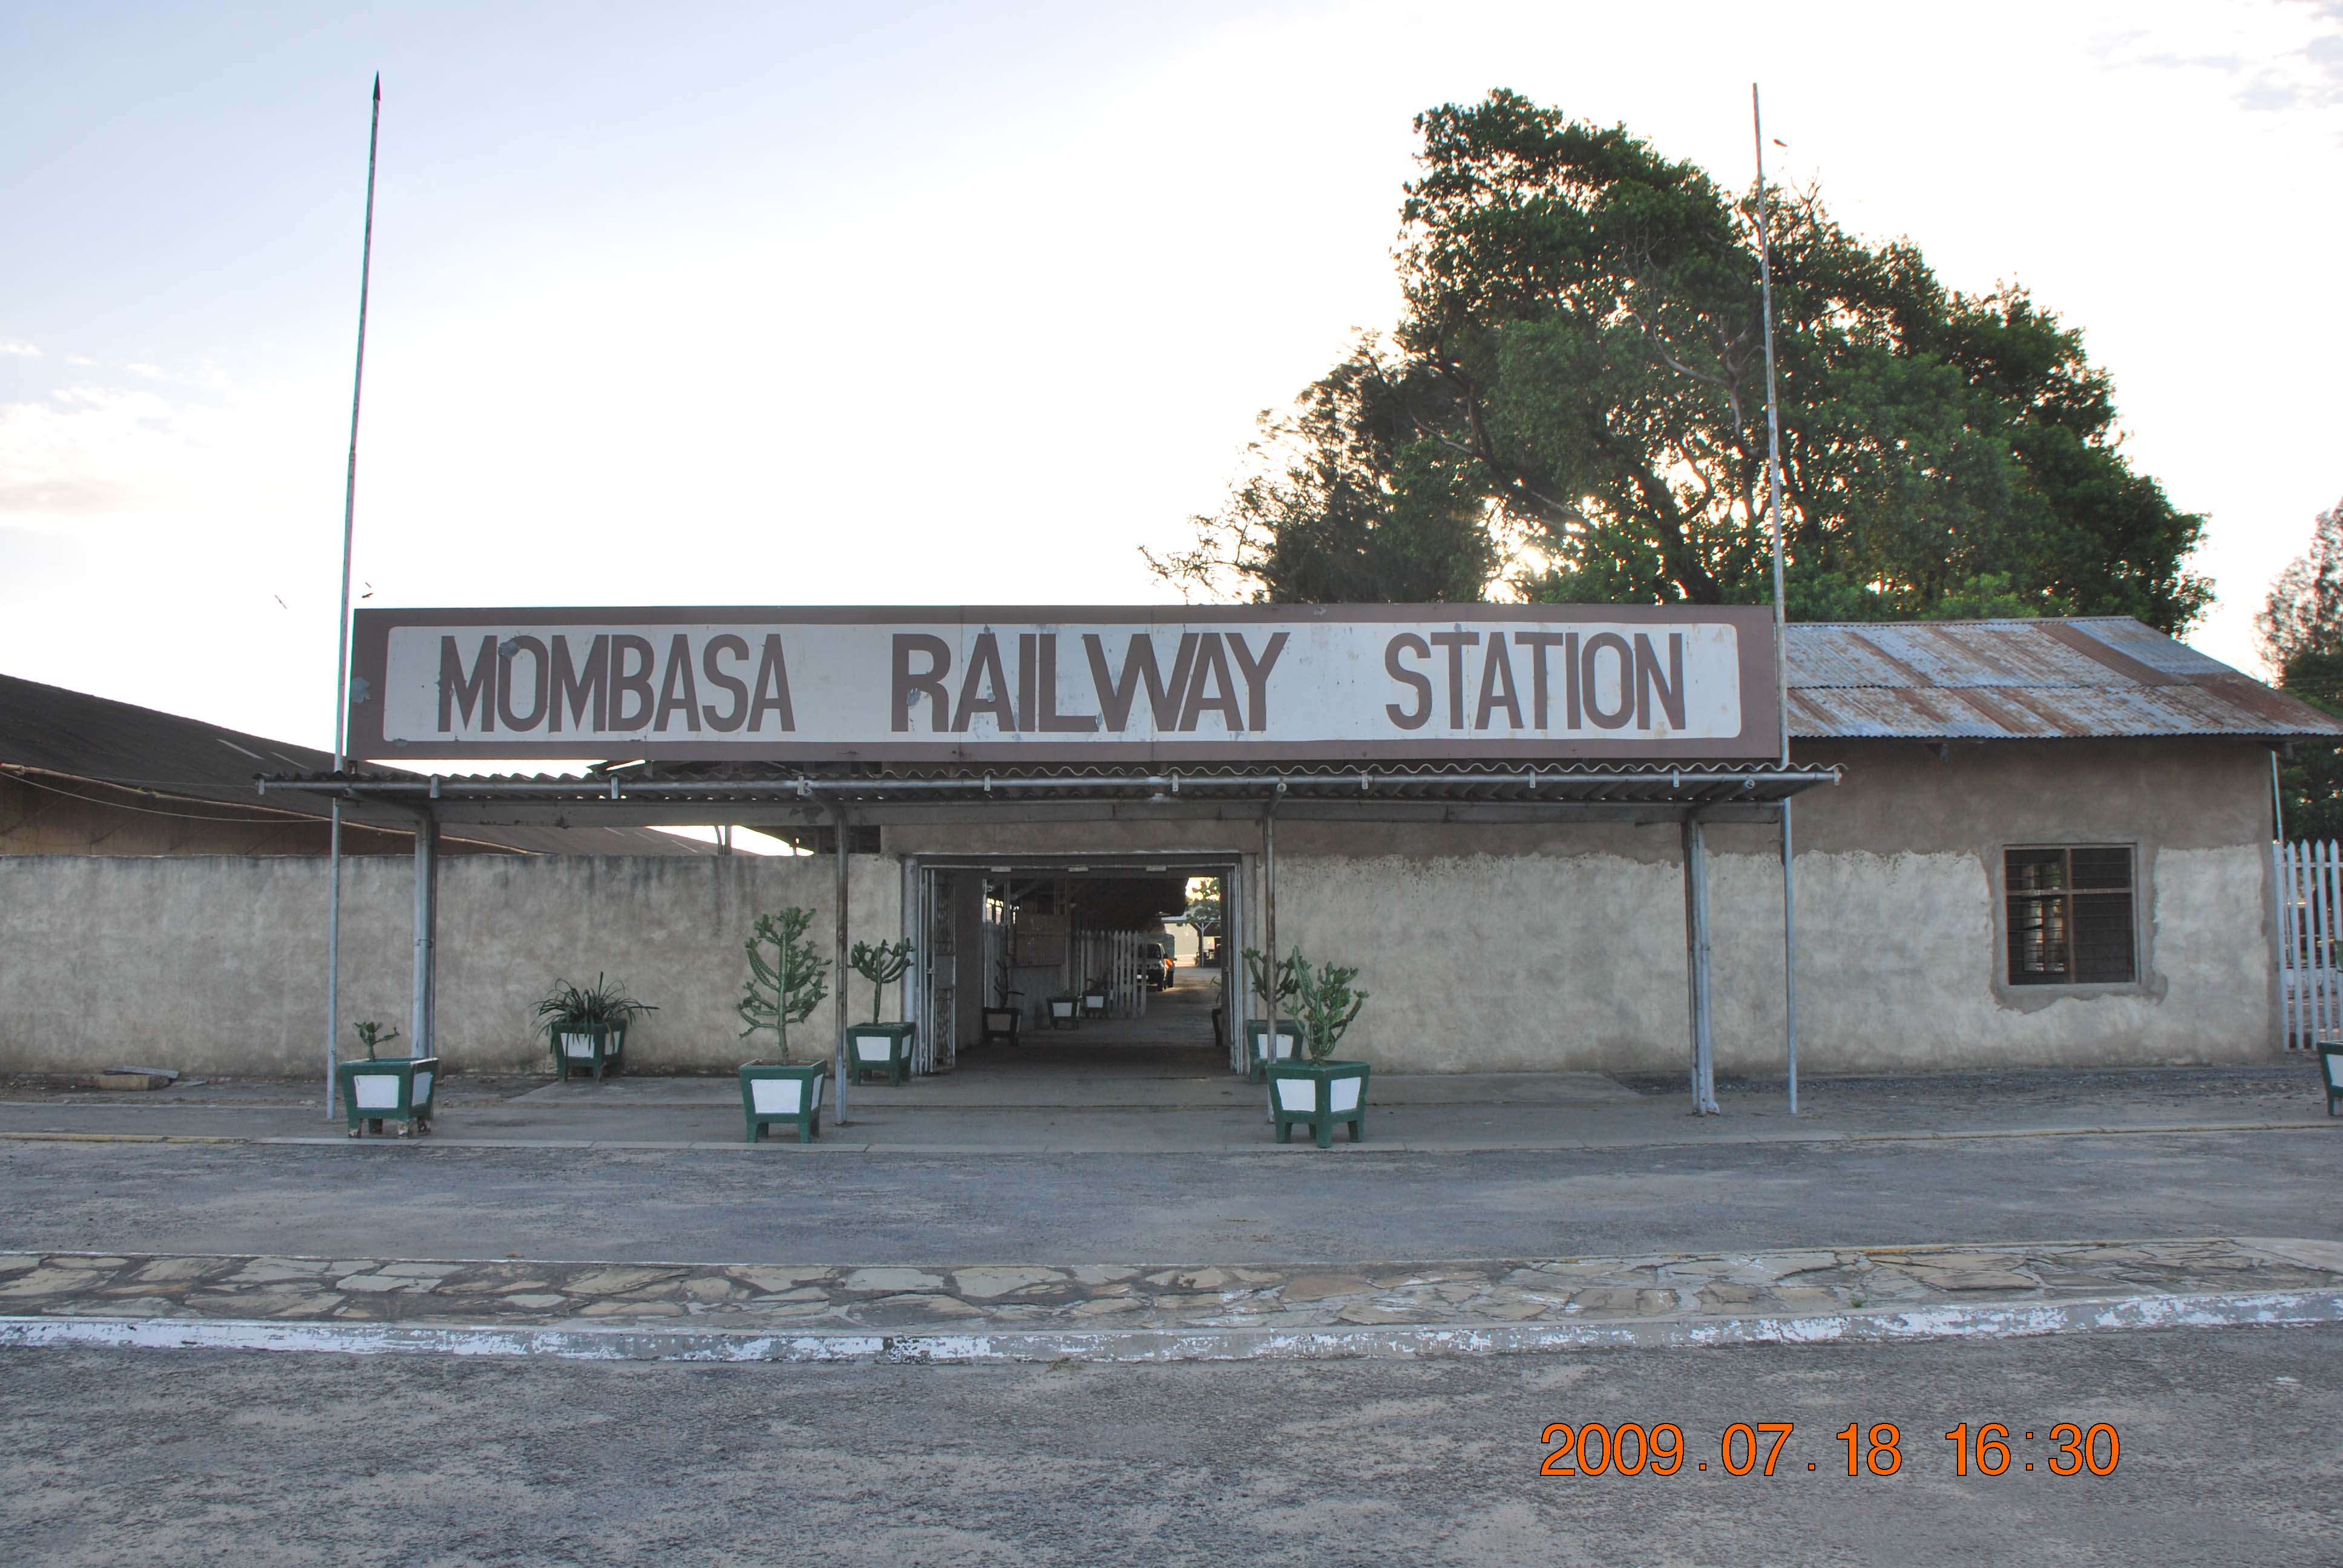 Kenia una experiencia inolvidable - Blogs of Kenya - Todo llega a su fin. Mombasa (3)